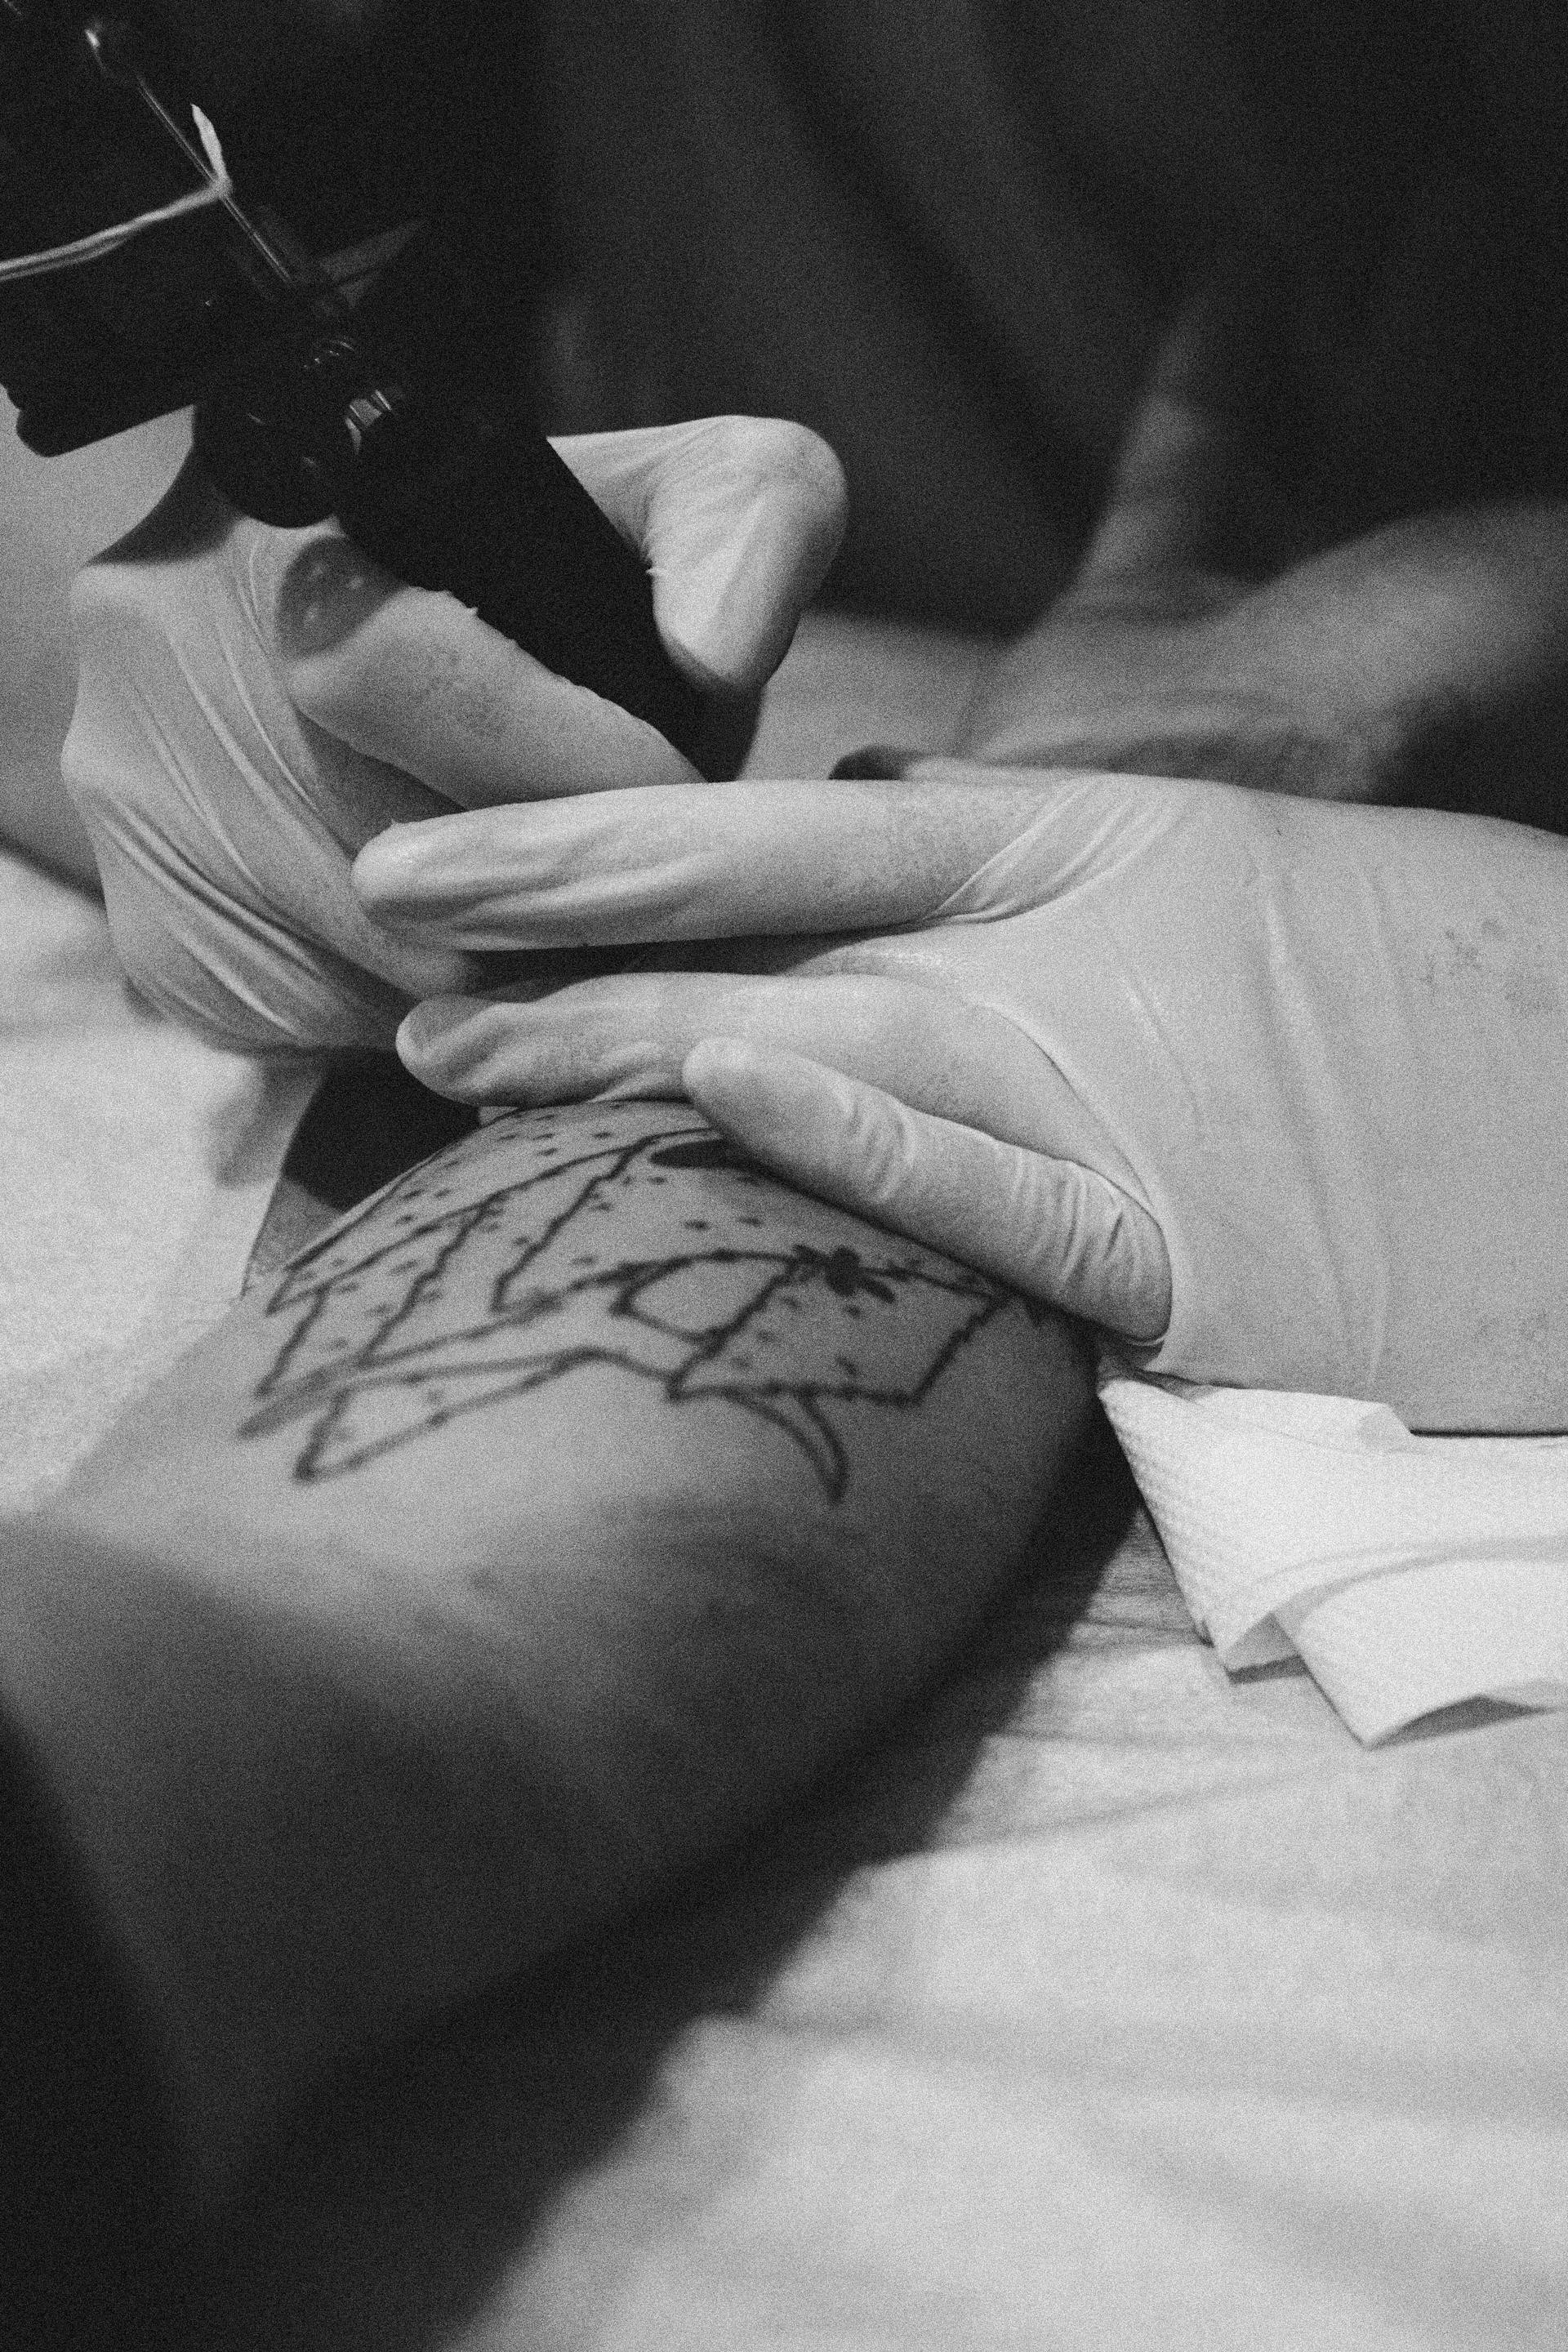 Une personne se faisant tatouer | Source : Pexels